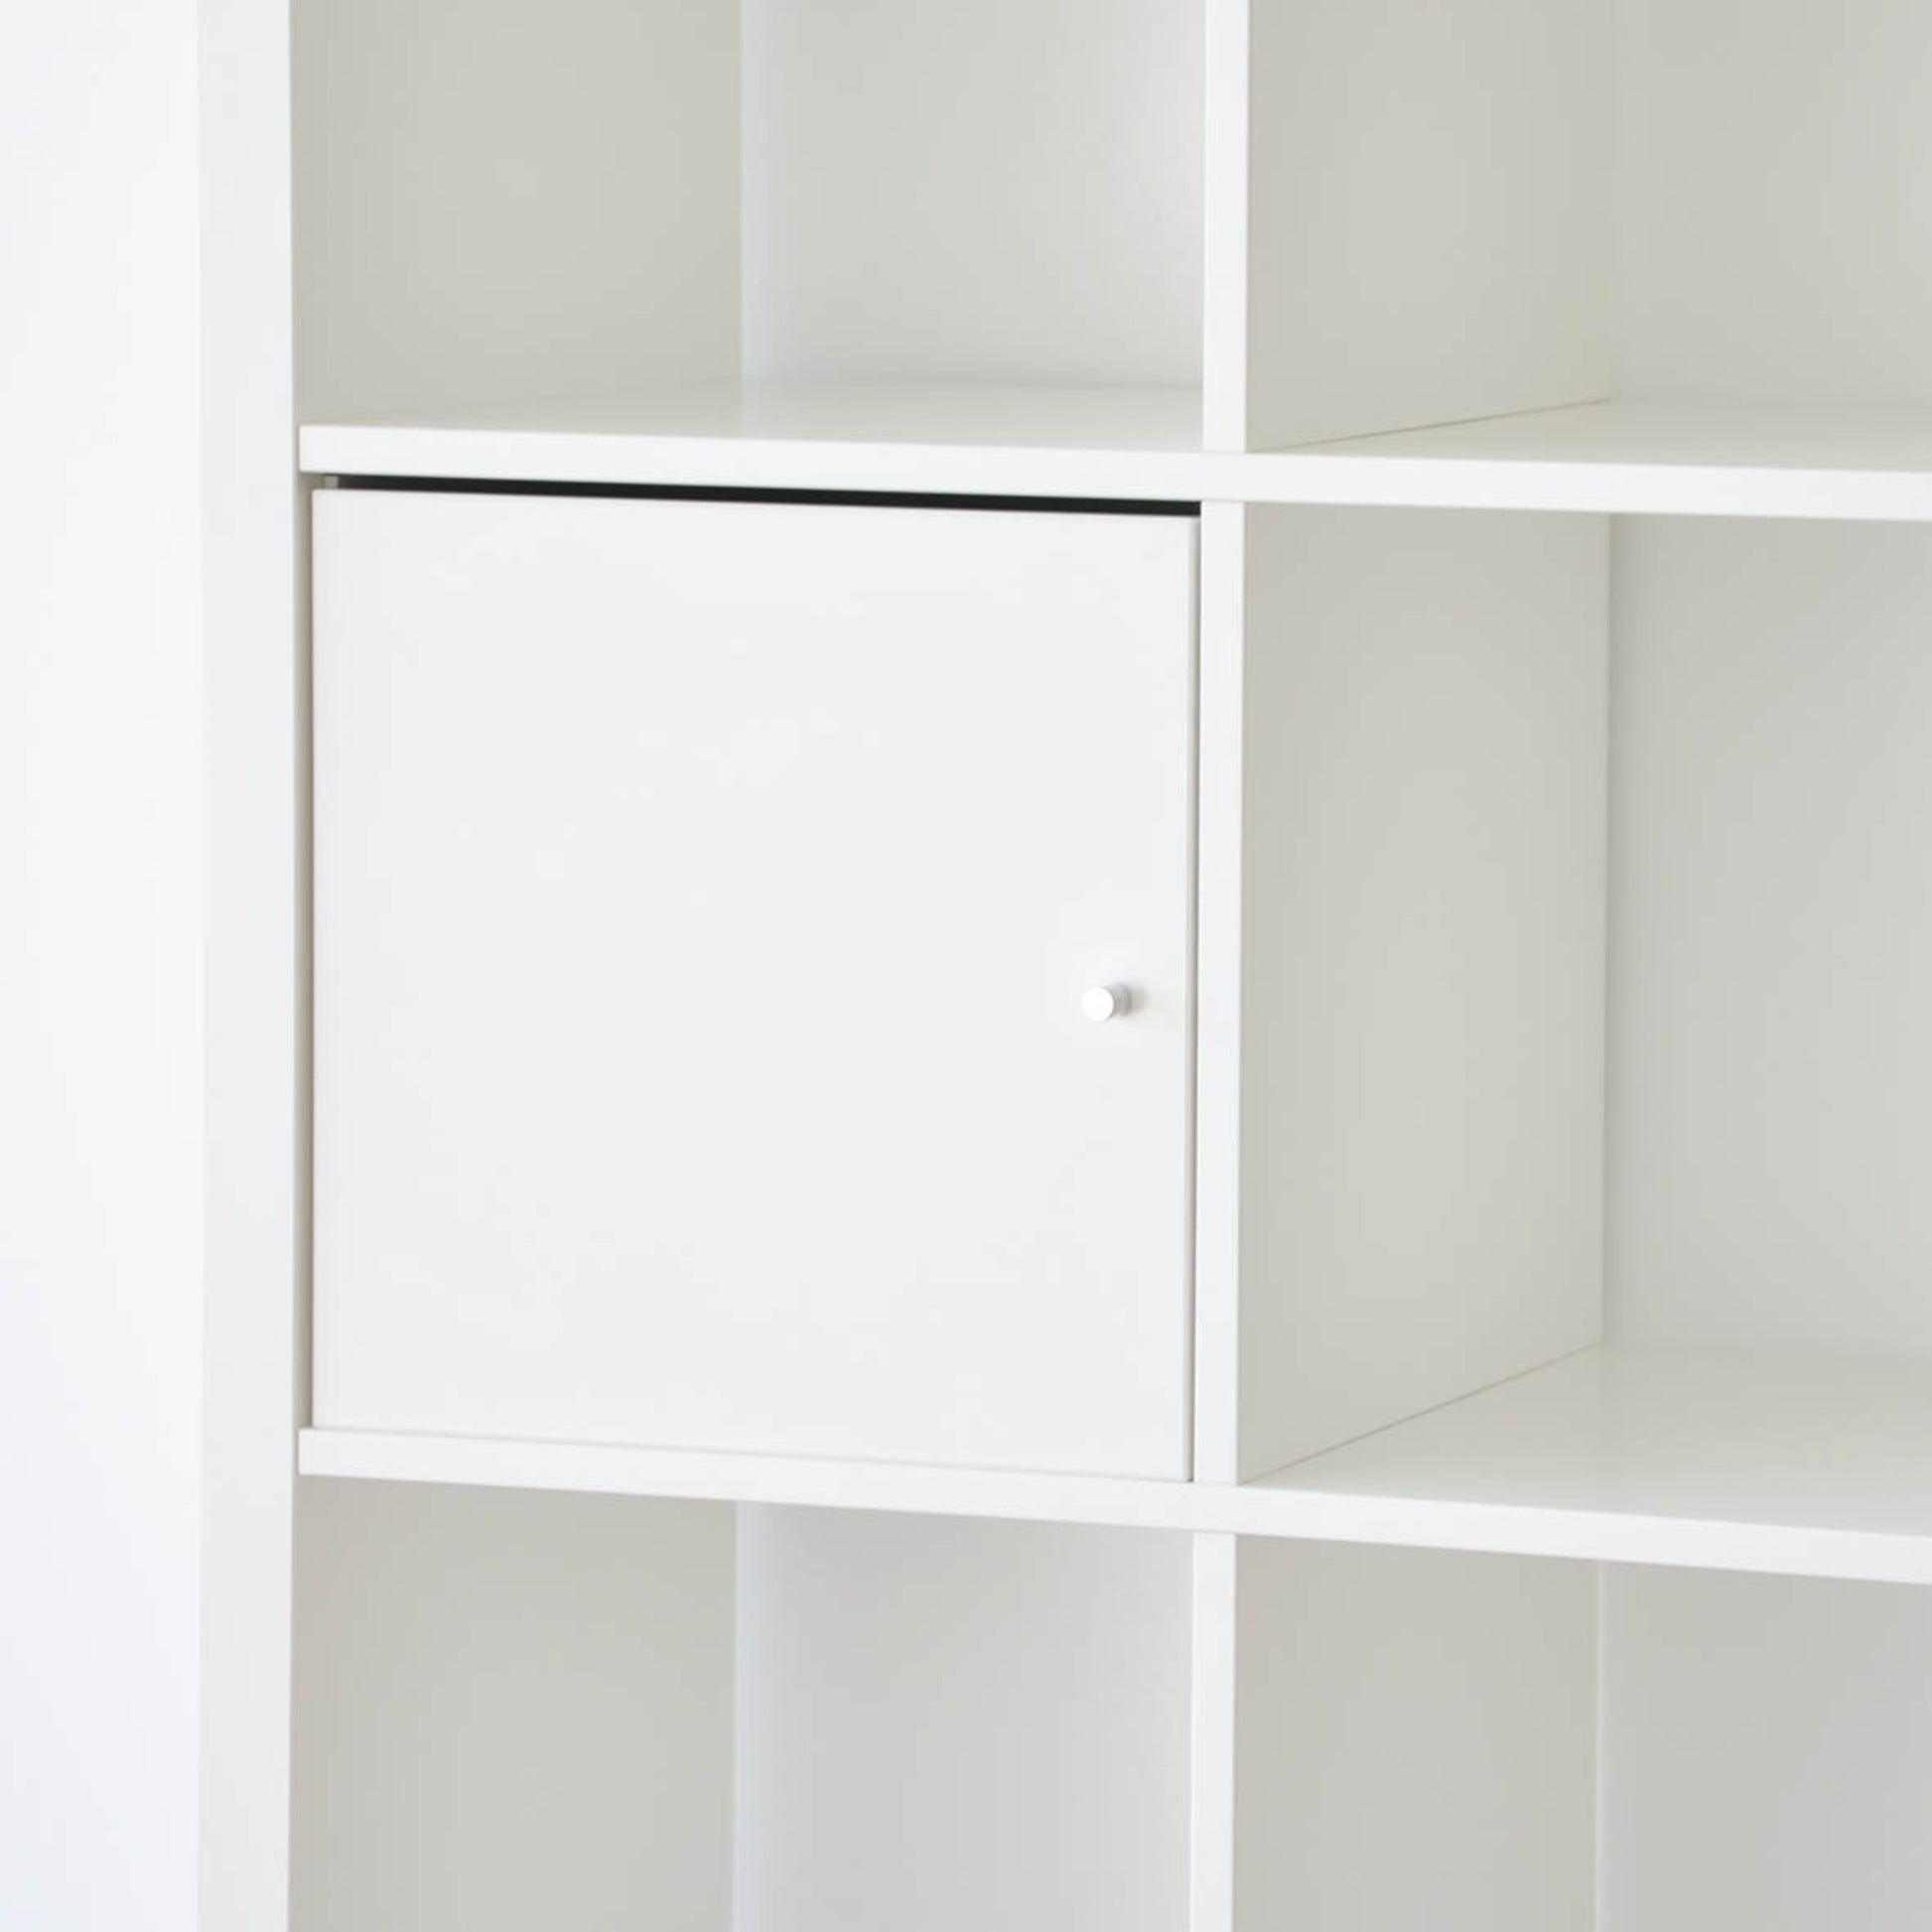 IKEA Kallax Insert with Door, White (595877764)